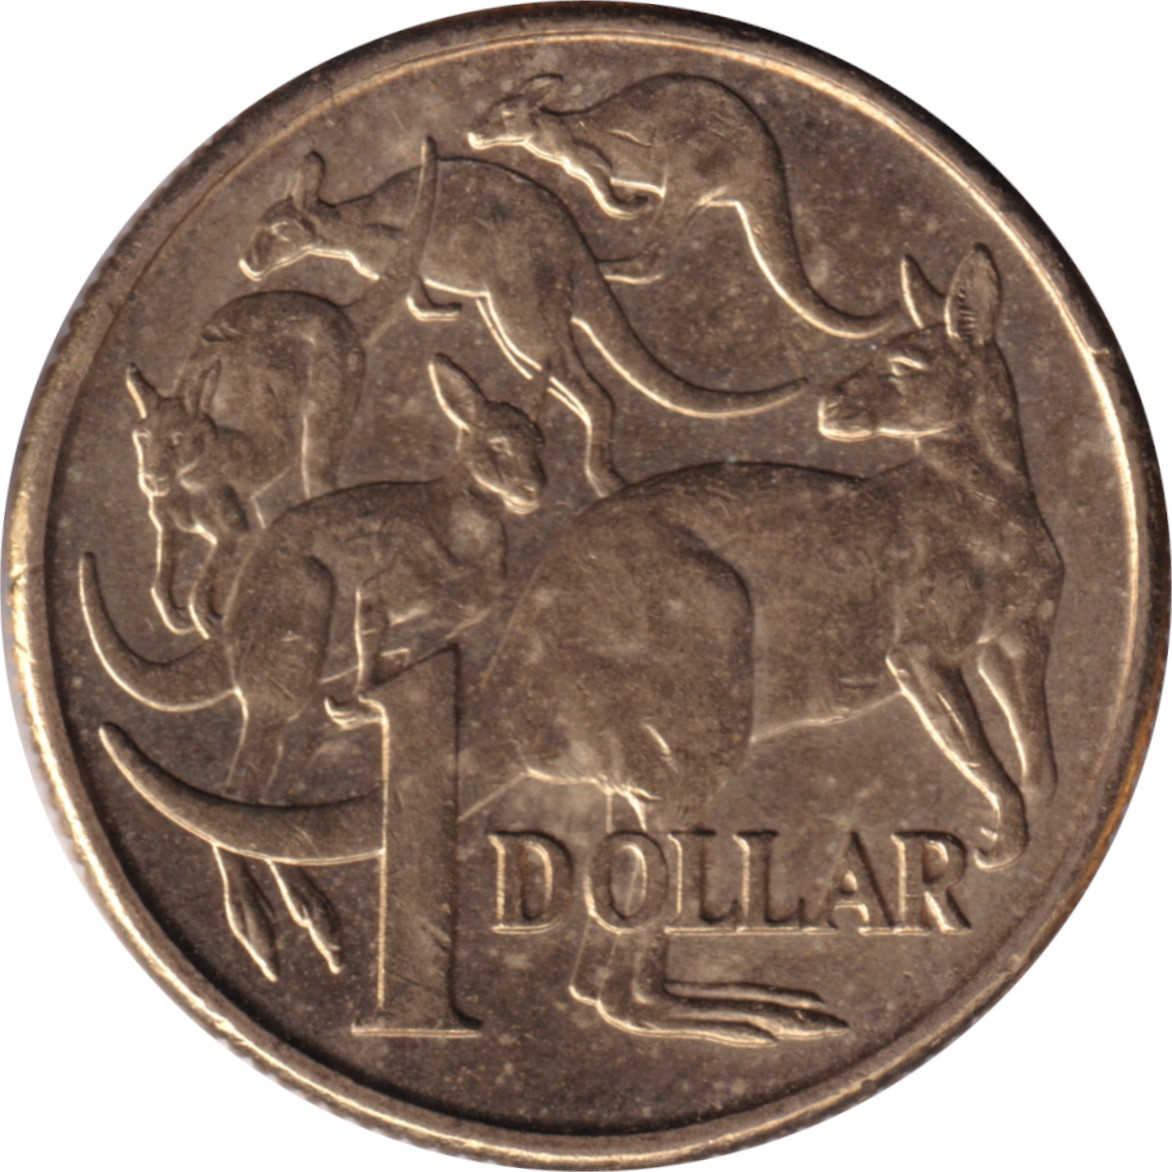 1 dollar - Elizabeth II - Tête agée